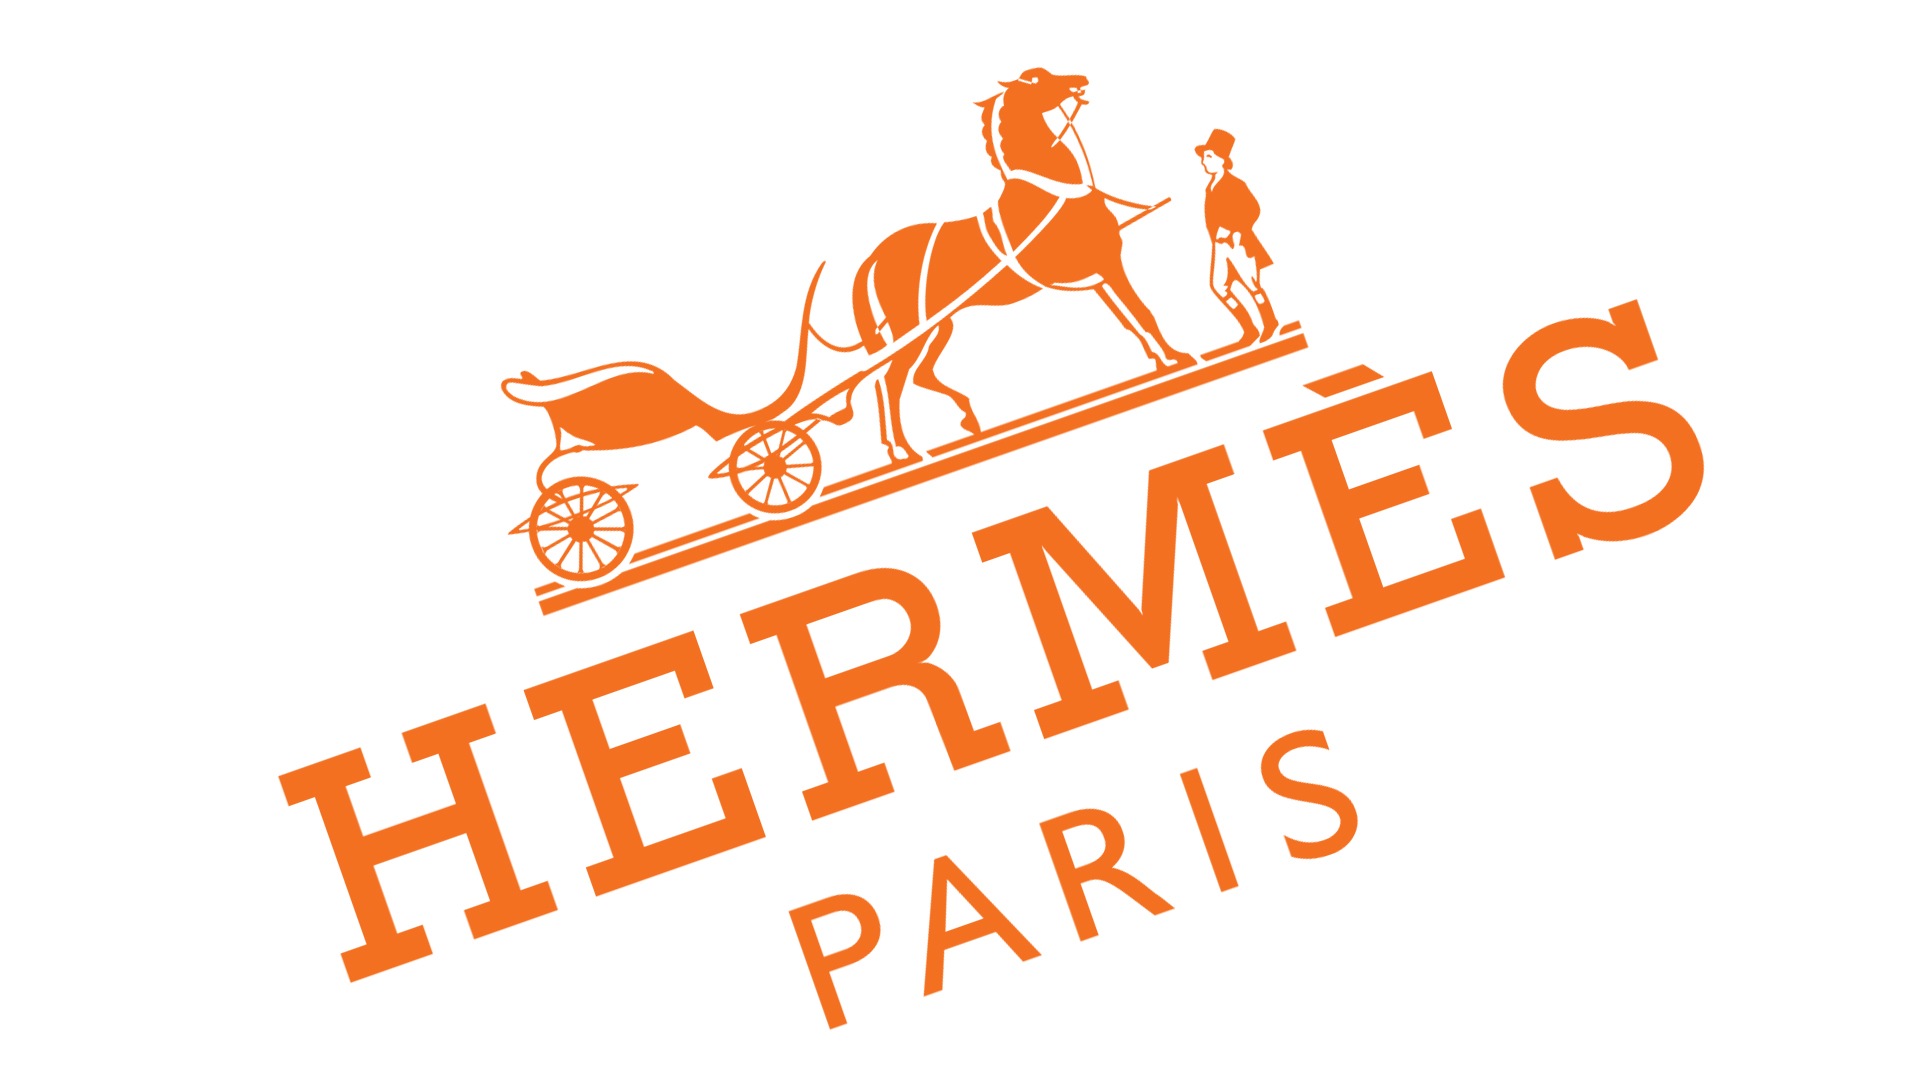 Hermes Правильное Произношение - распечатайте наши фотографии